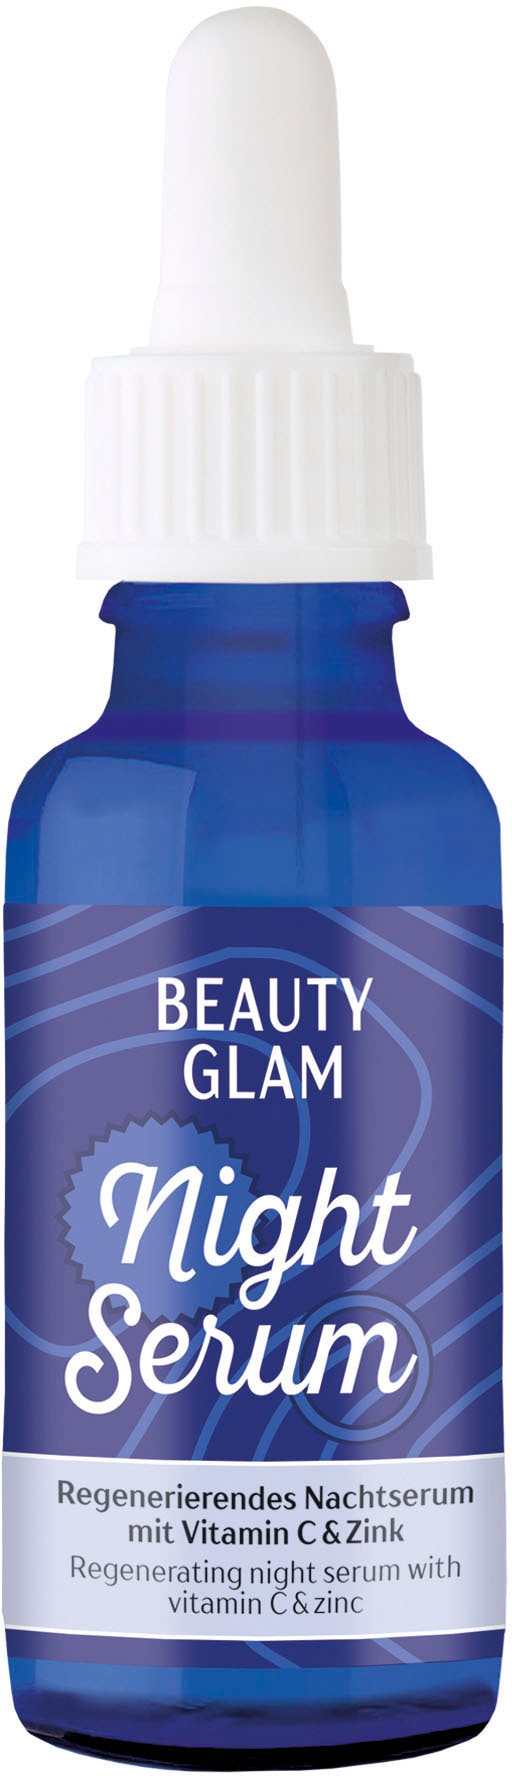 bestellen GLAM »Beauty BEAUTY Serum« Night Gesichtsserum UNIVERSAL Glam |